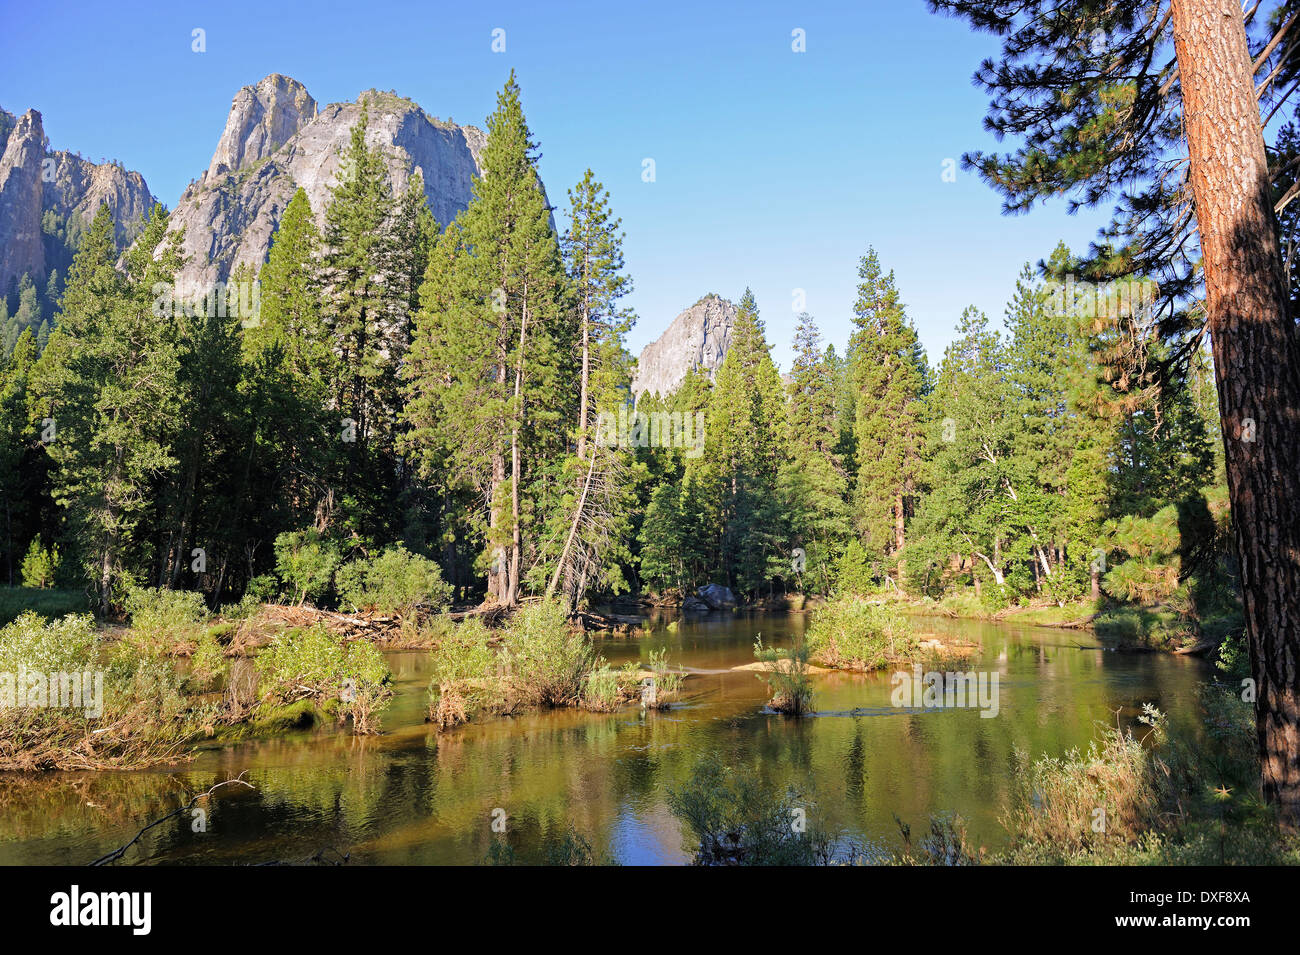 La rivière Merced, Yosemite National Park, California, USA, Amérique du Nord Banque D'Images